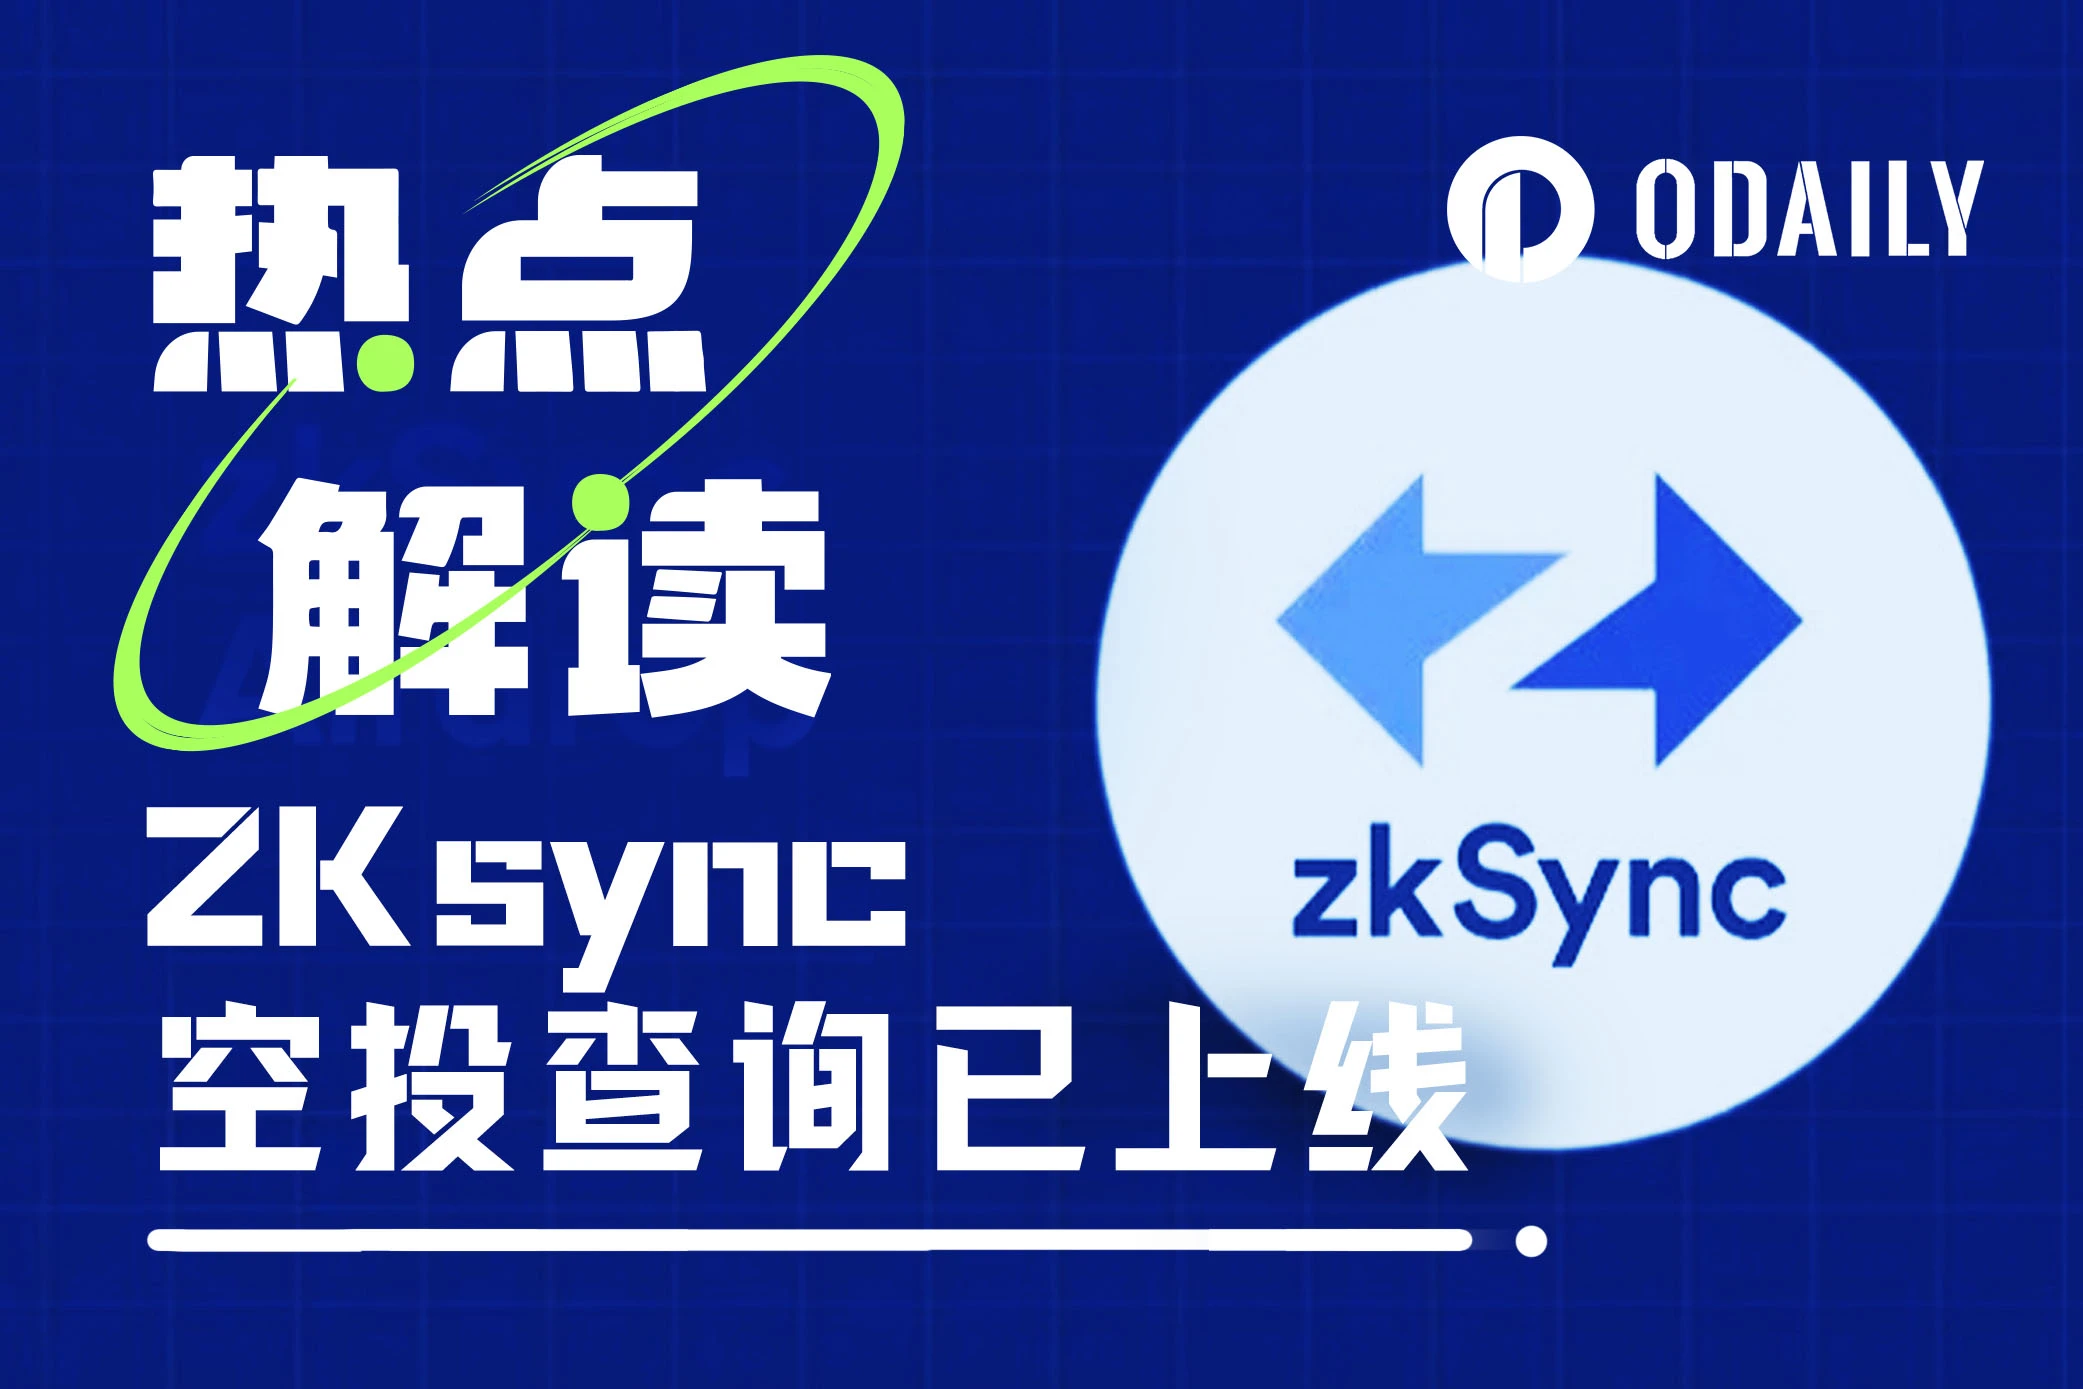 zkSync上线空投查询，后续步骤有哪些？